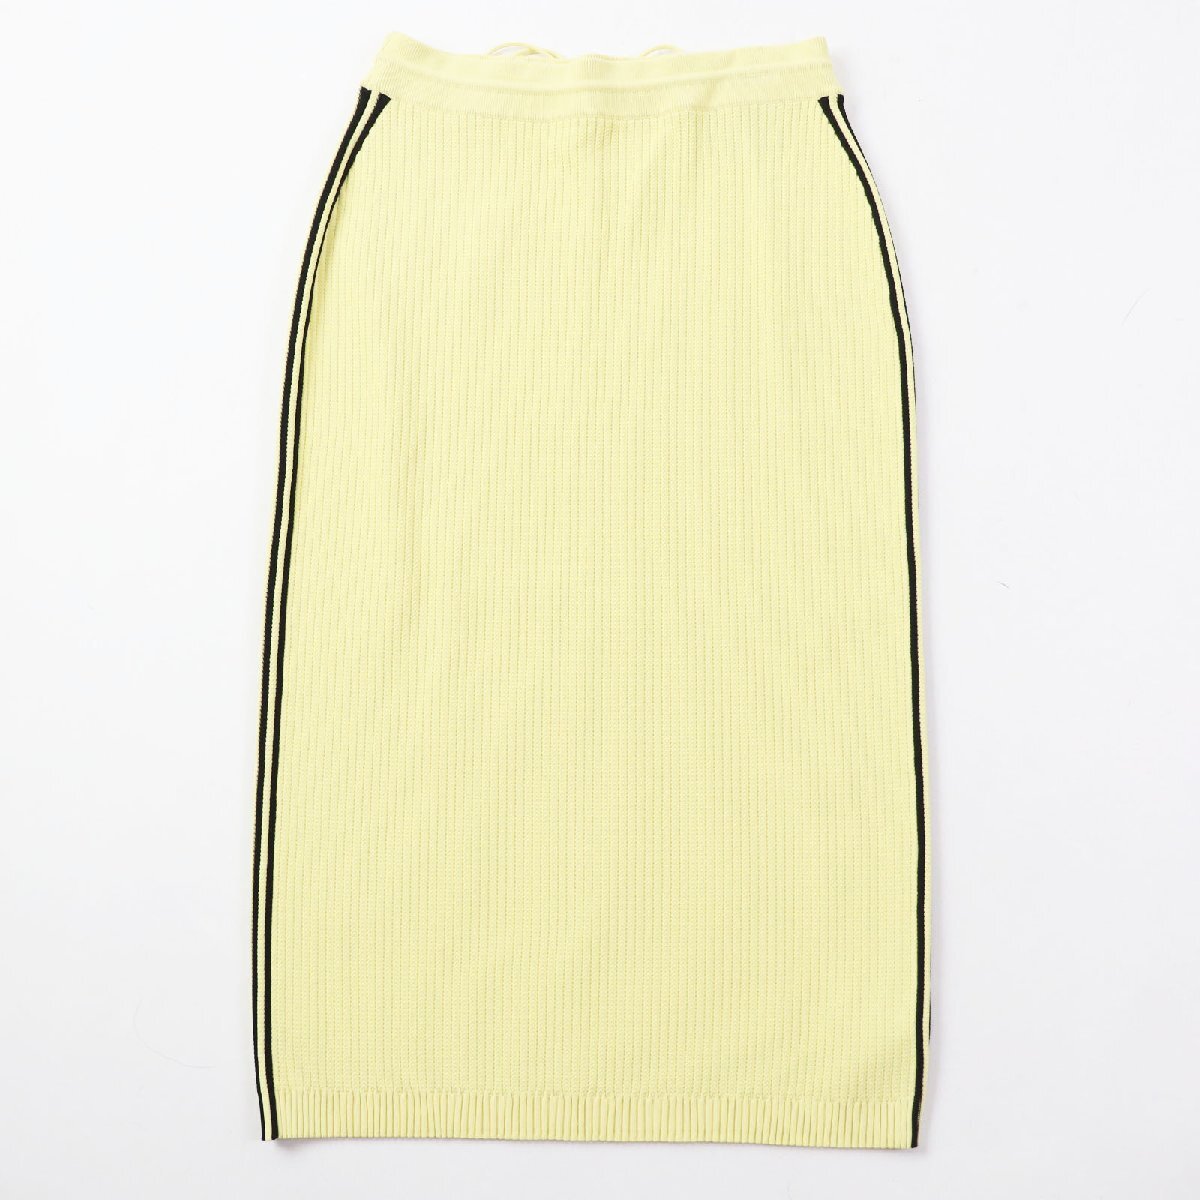  не использовался товар GUCCI Gucci Adidas 697710 линия ввод вязаный длинная юбка желтый черный ga- men to имеется сделано в Италии стандартный товар женский 